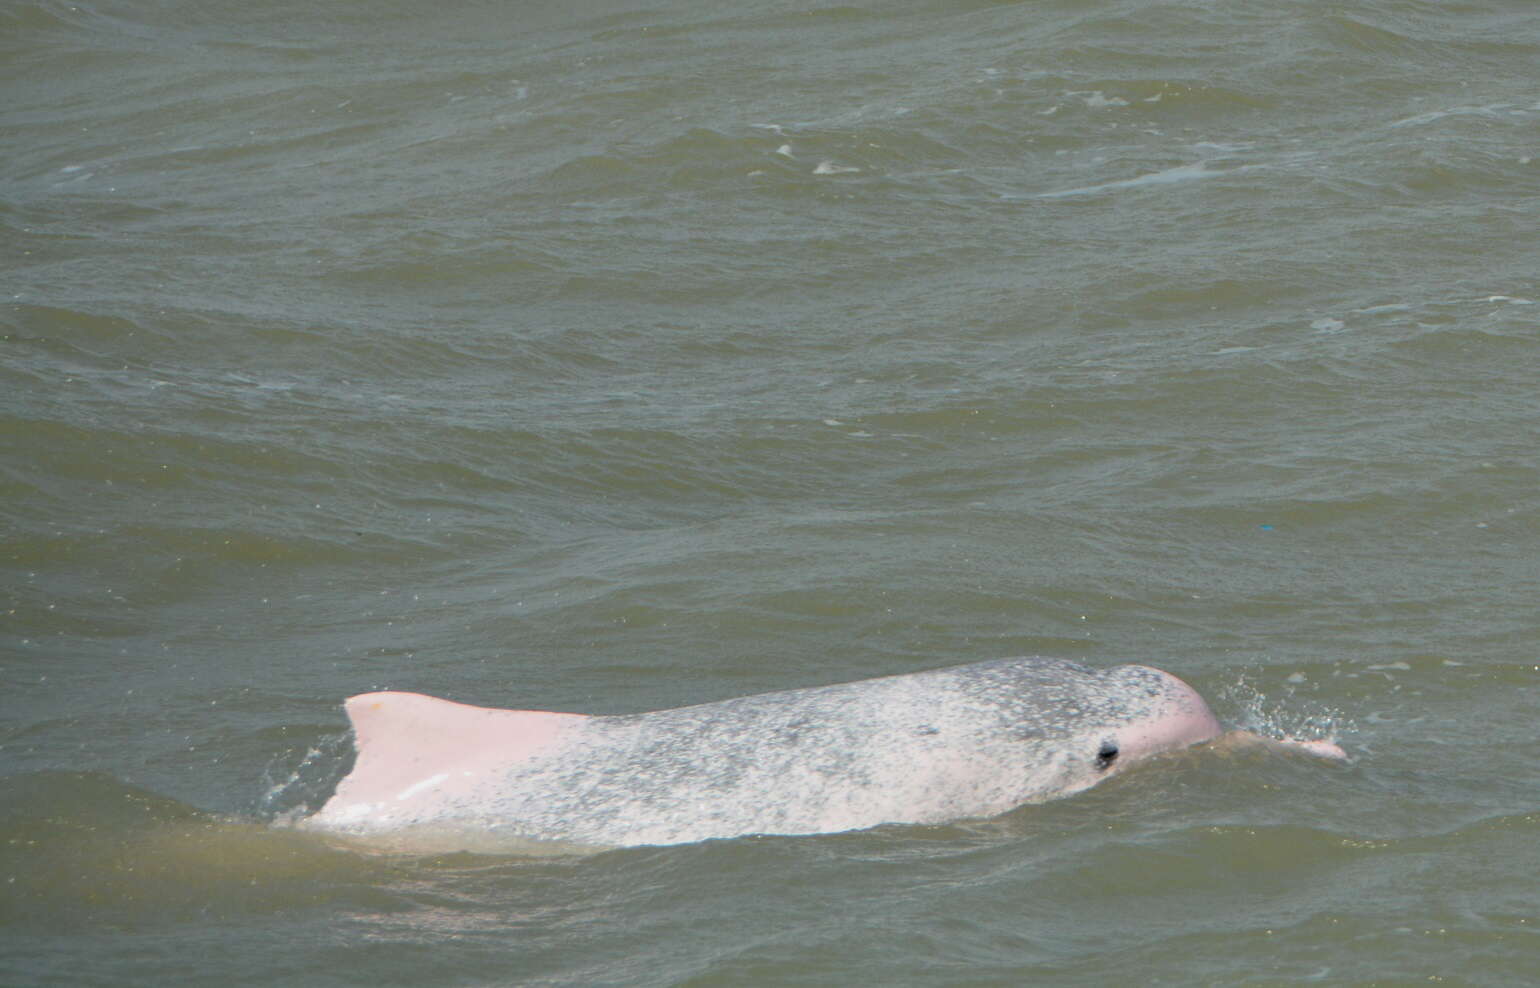 Sivun Intiankyttyrädelfiini kuva